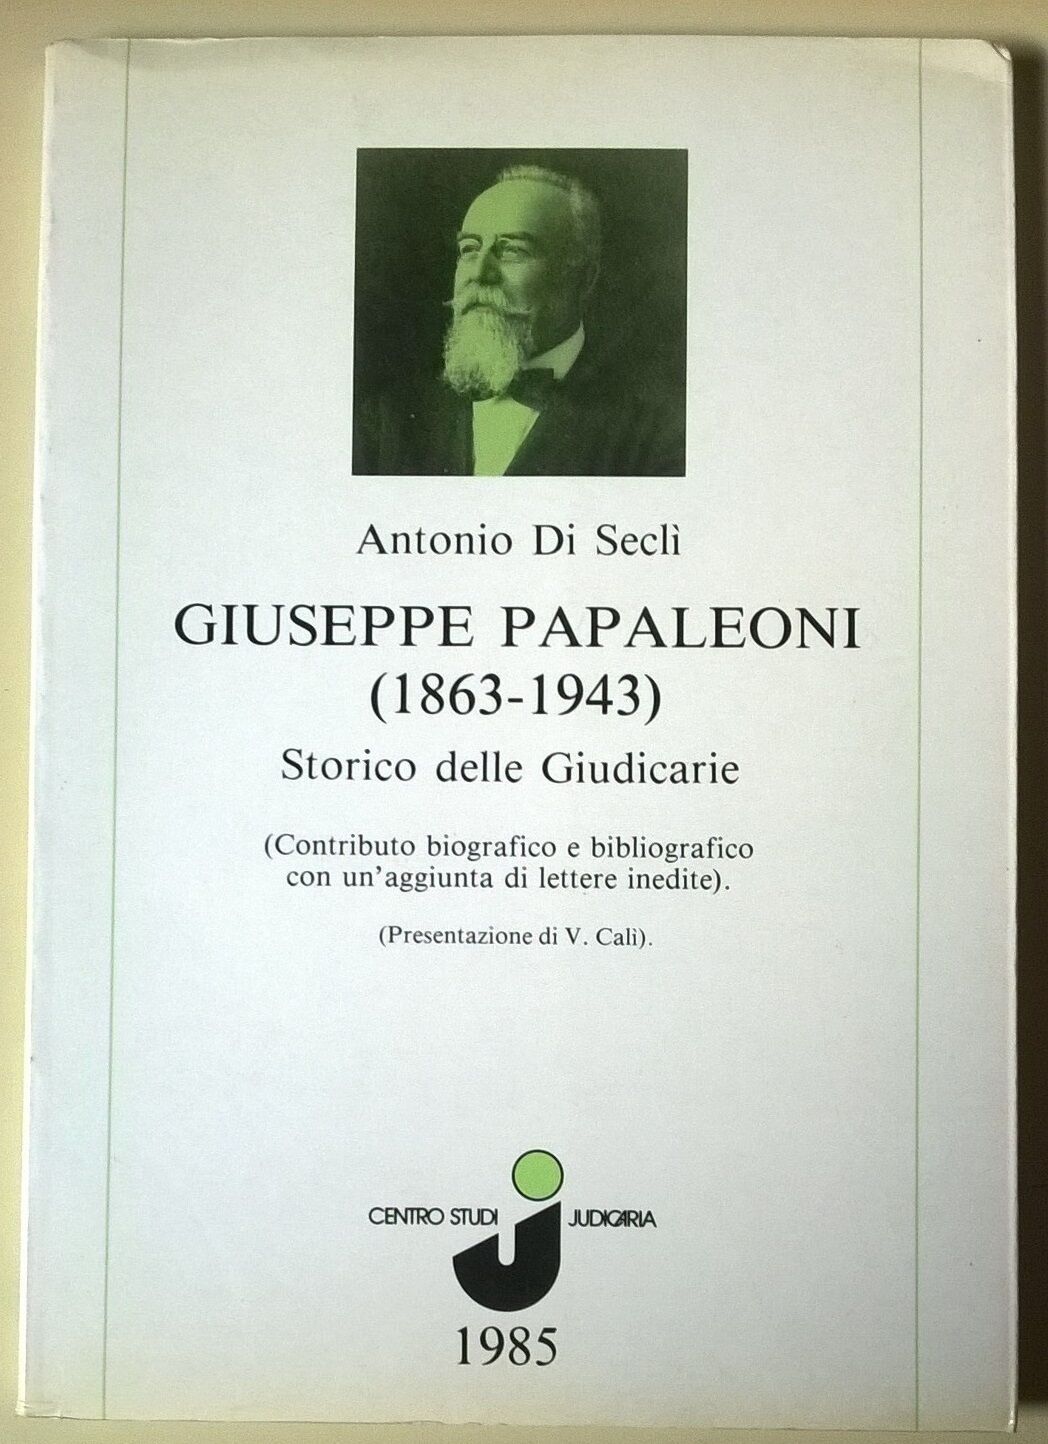 Giuseppe Papaleoni (1863-1943) Storico delle Giudicarie - A. Di Secl?, 1985 - L 